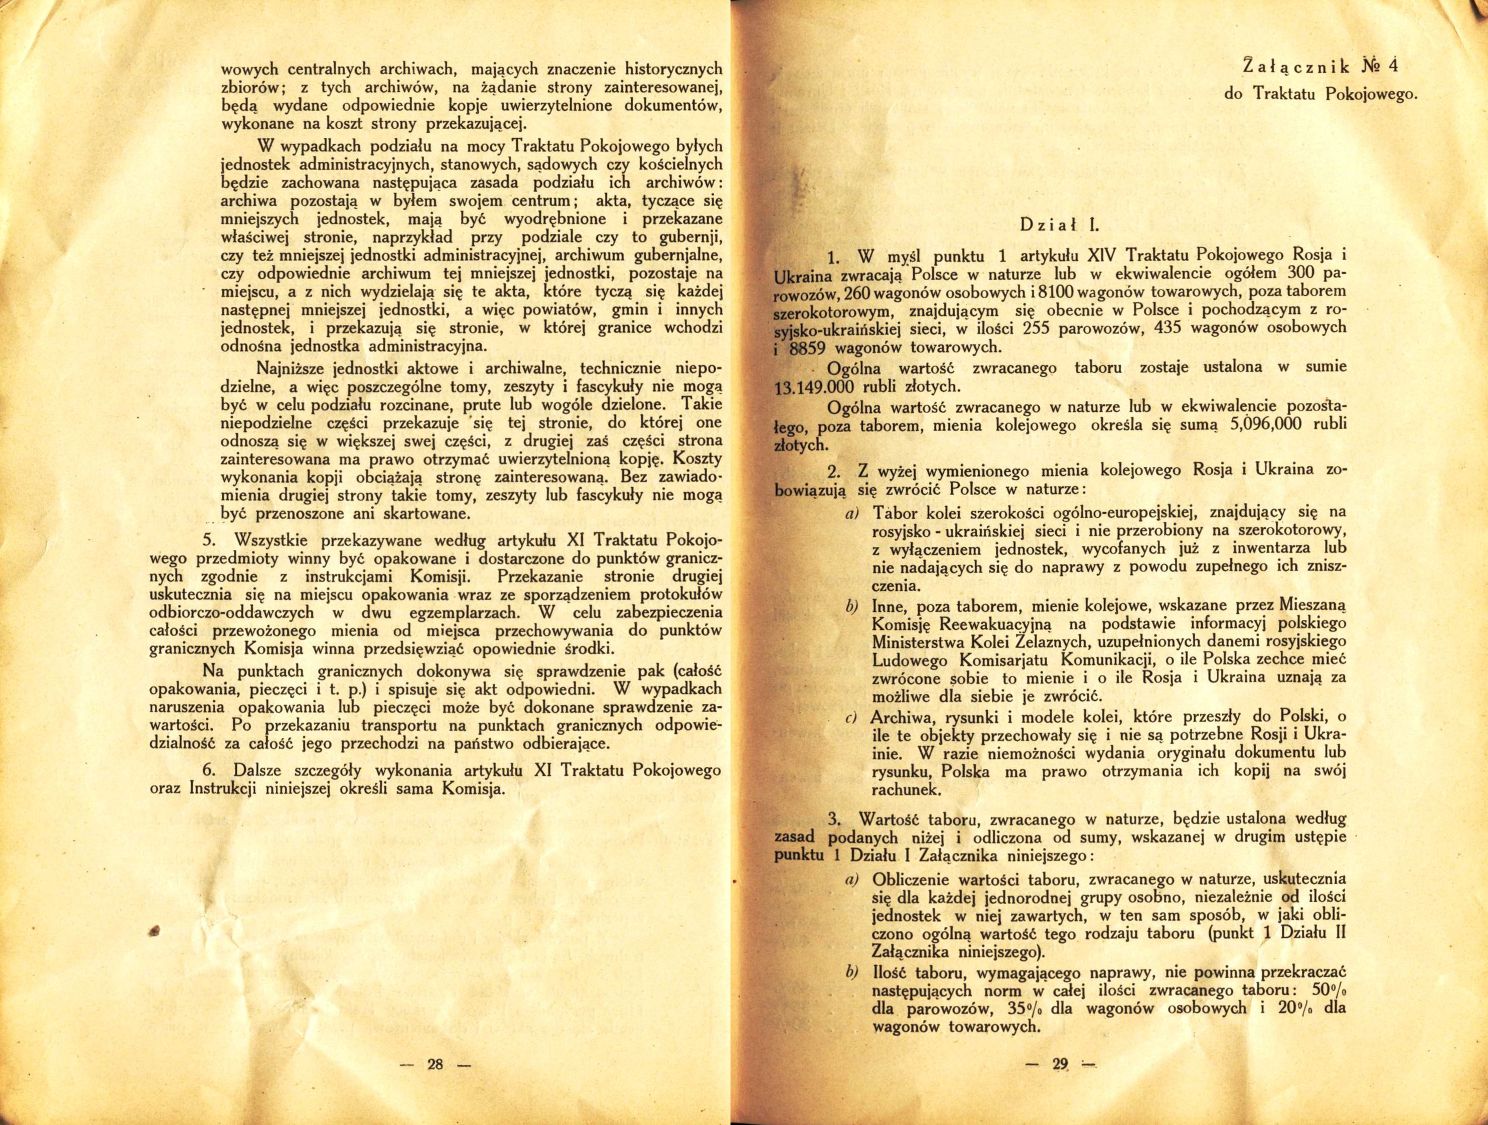 Traktat Pokoju między Polską a Rosją i Ukrainą podpisany w Rydze dnia 18 marca 1921 roku, s. 28-29, Akta Jana Dąbskiego, sygn. 5